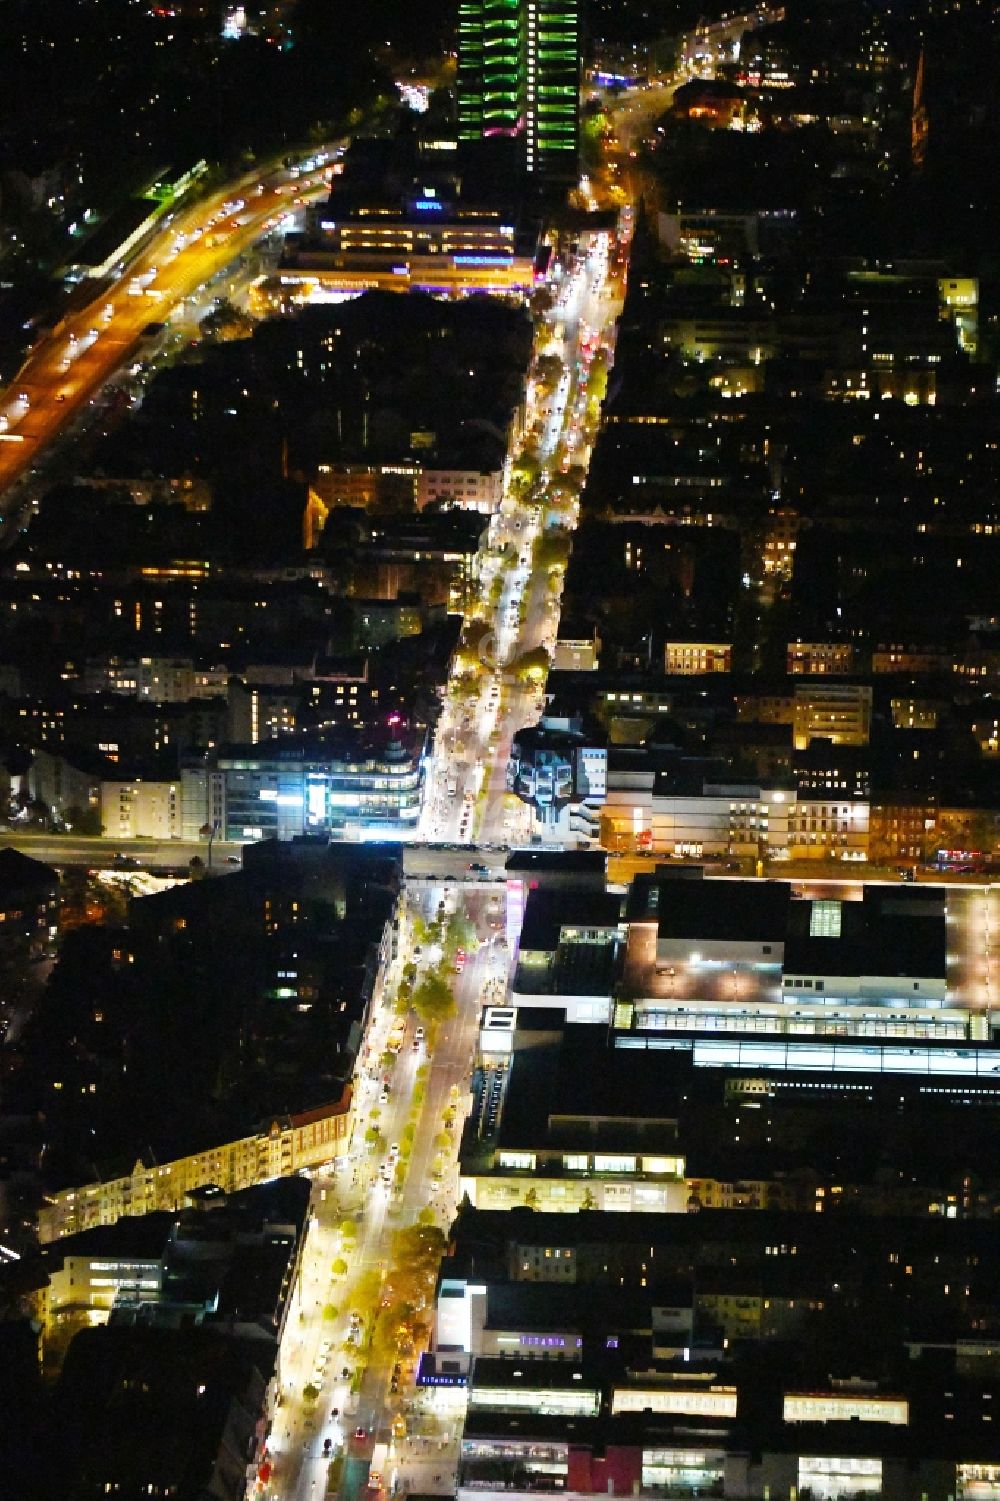 Nachtluftbild Berlin - Nachtluftbild Straßenführung der bekannten Flaniermeile und Einkaufsstraße Schloßstraße im Ortsteil Steglitz in Berlin, Deutschland